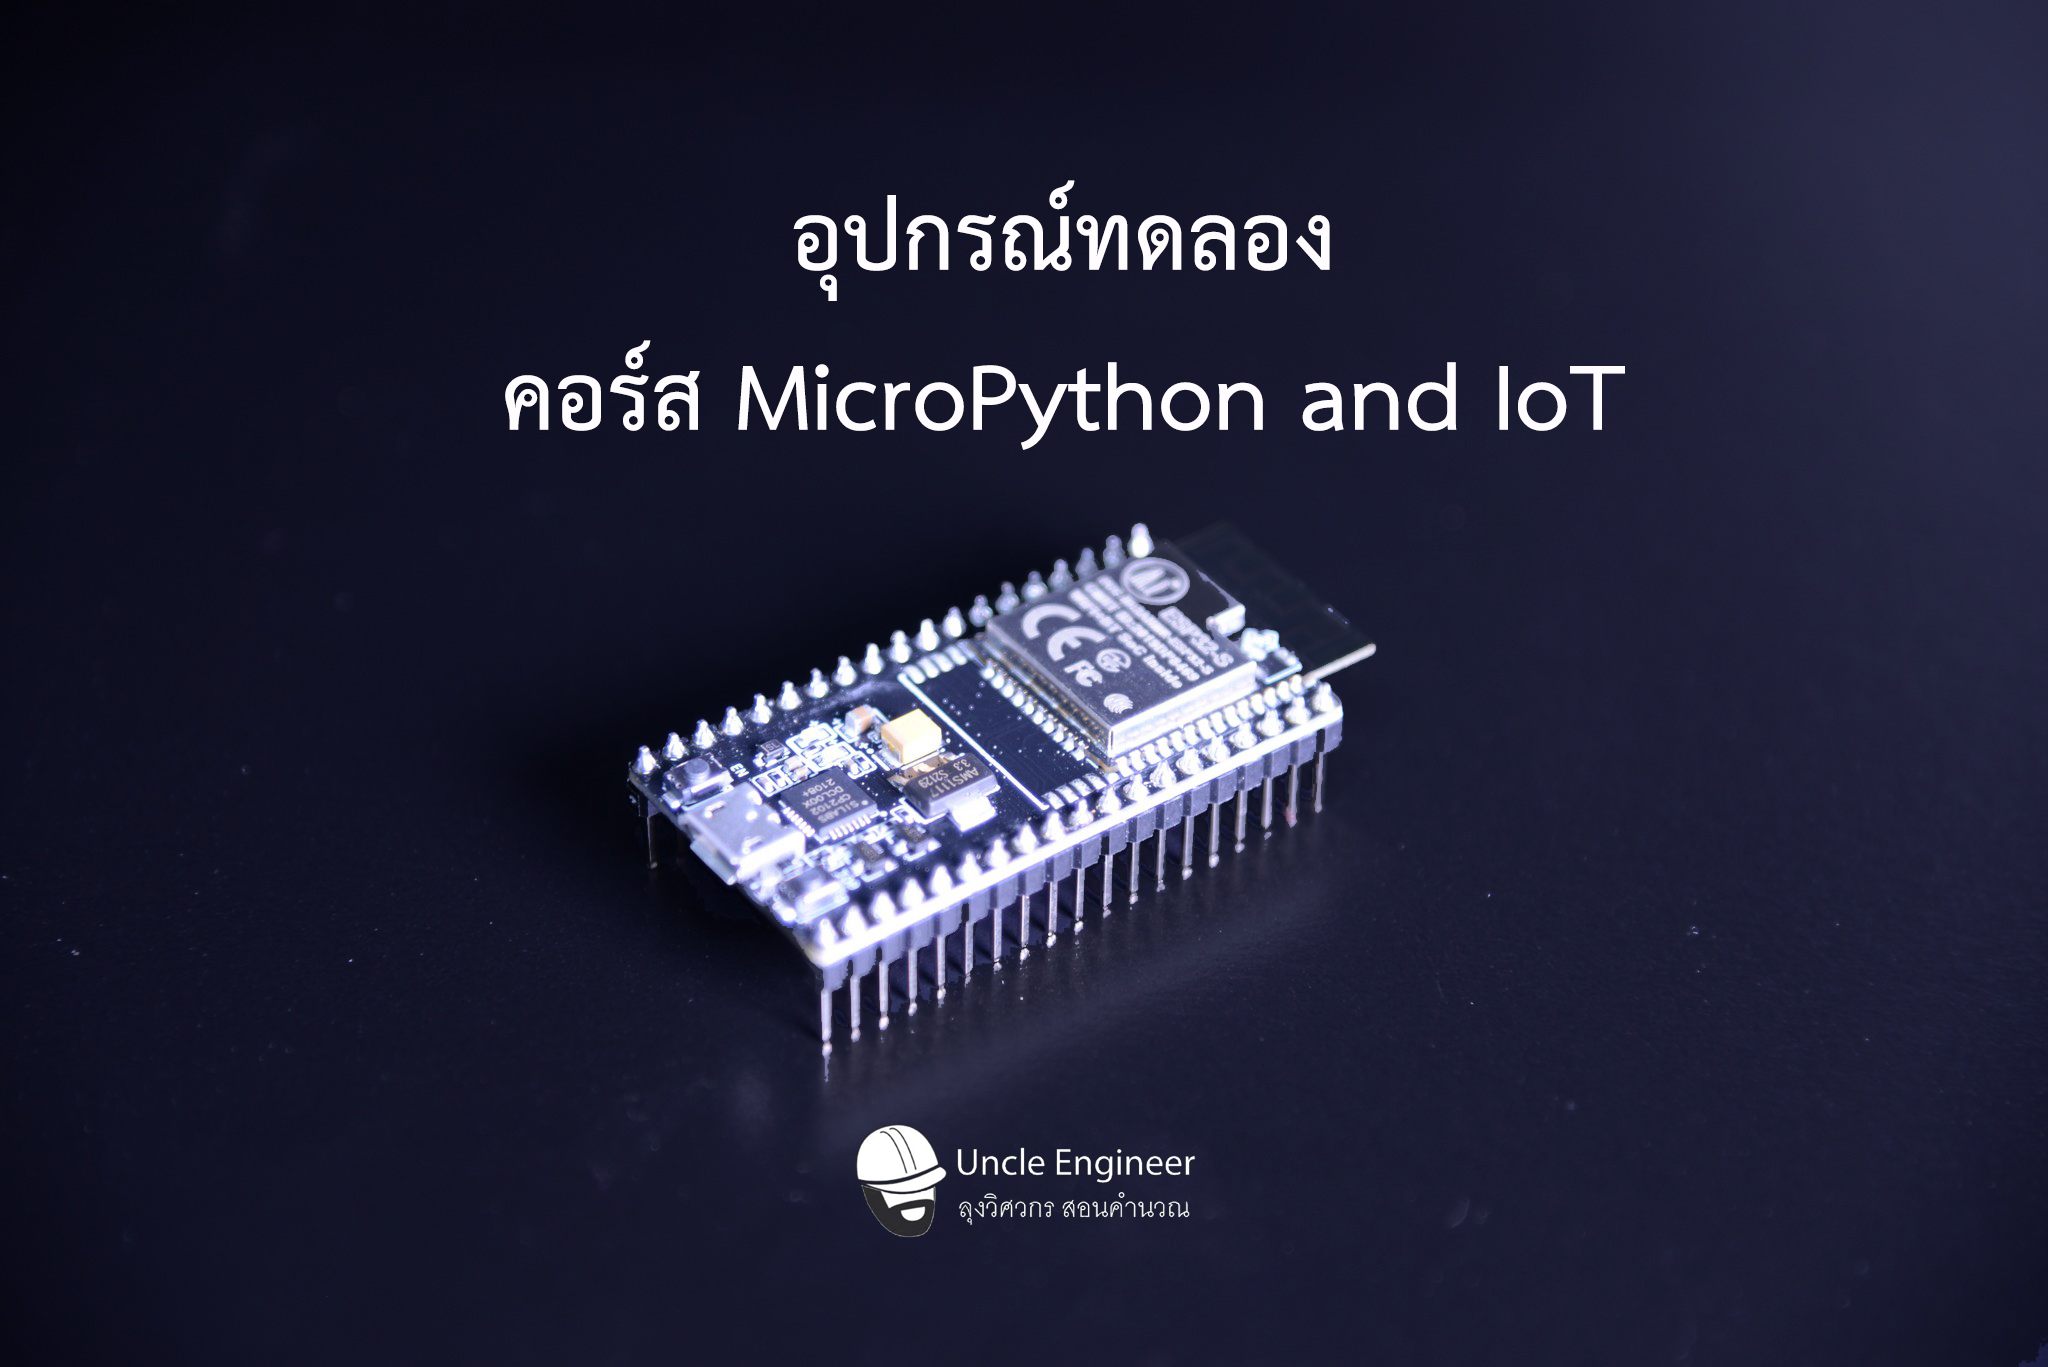 ชุดทดลอง IoT คอร์ส MicroPython